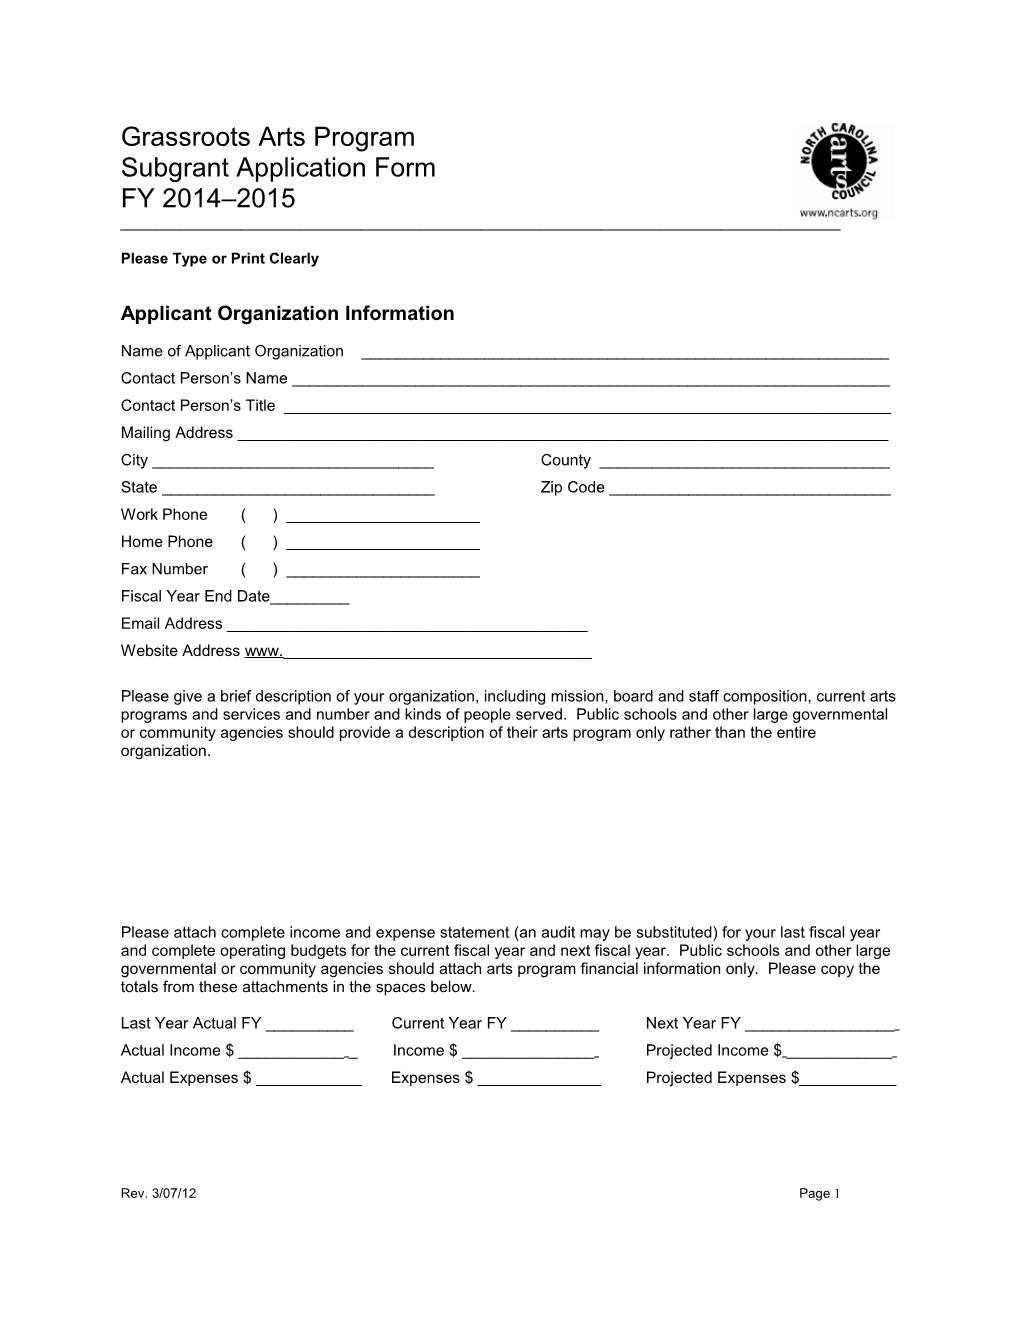 Grassroots Arts Program Subgrant Application Form 2002-03 1